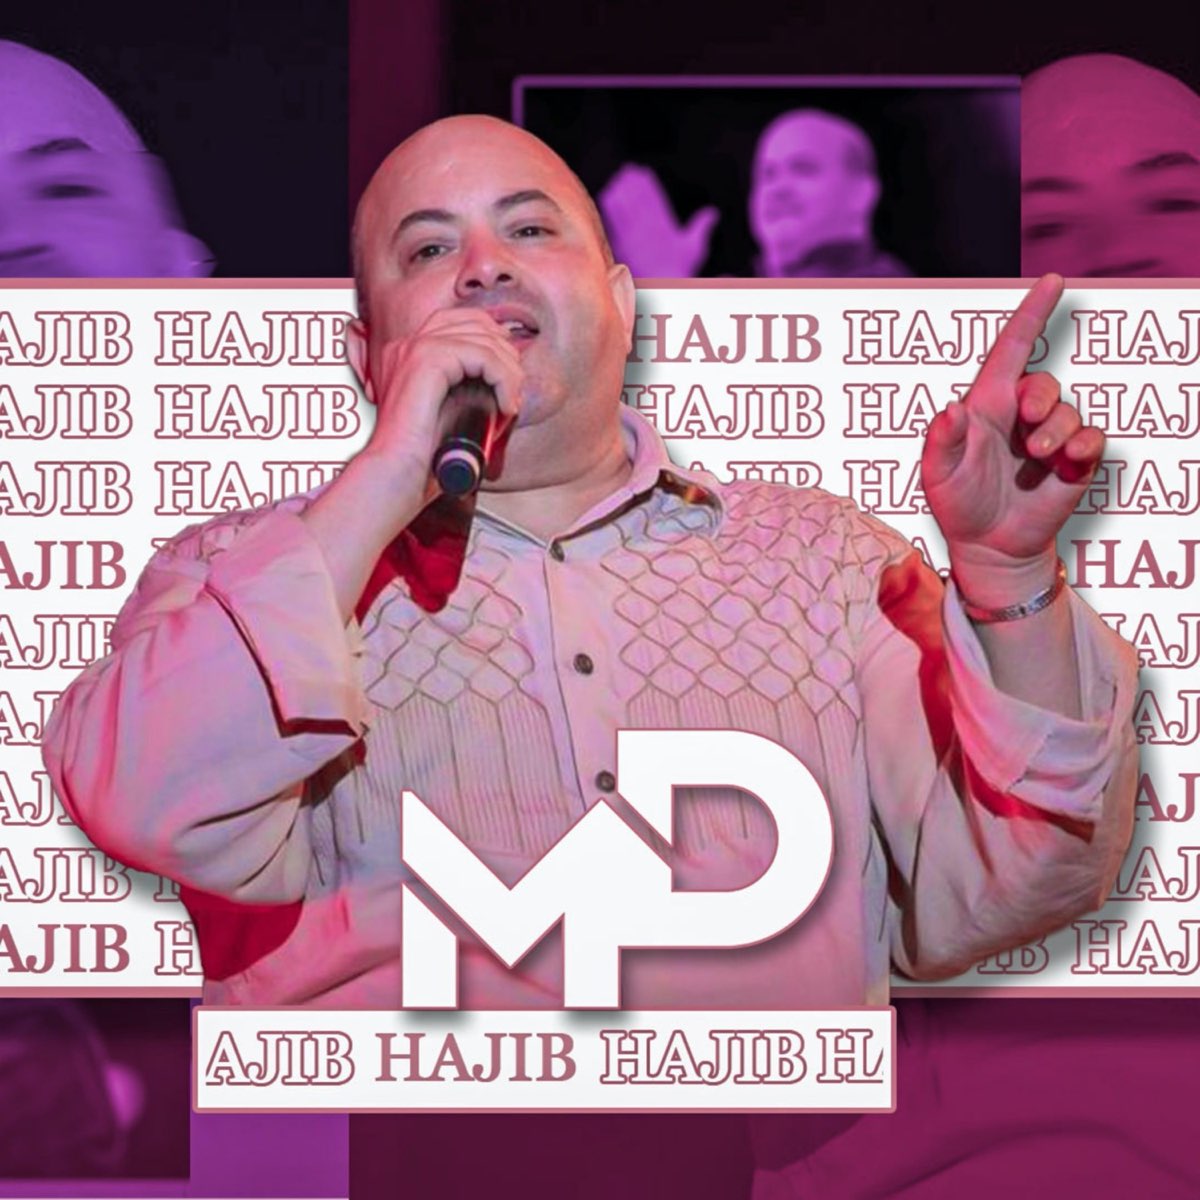 Hajib - Single – Album par Dj Medi – Apple Music